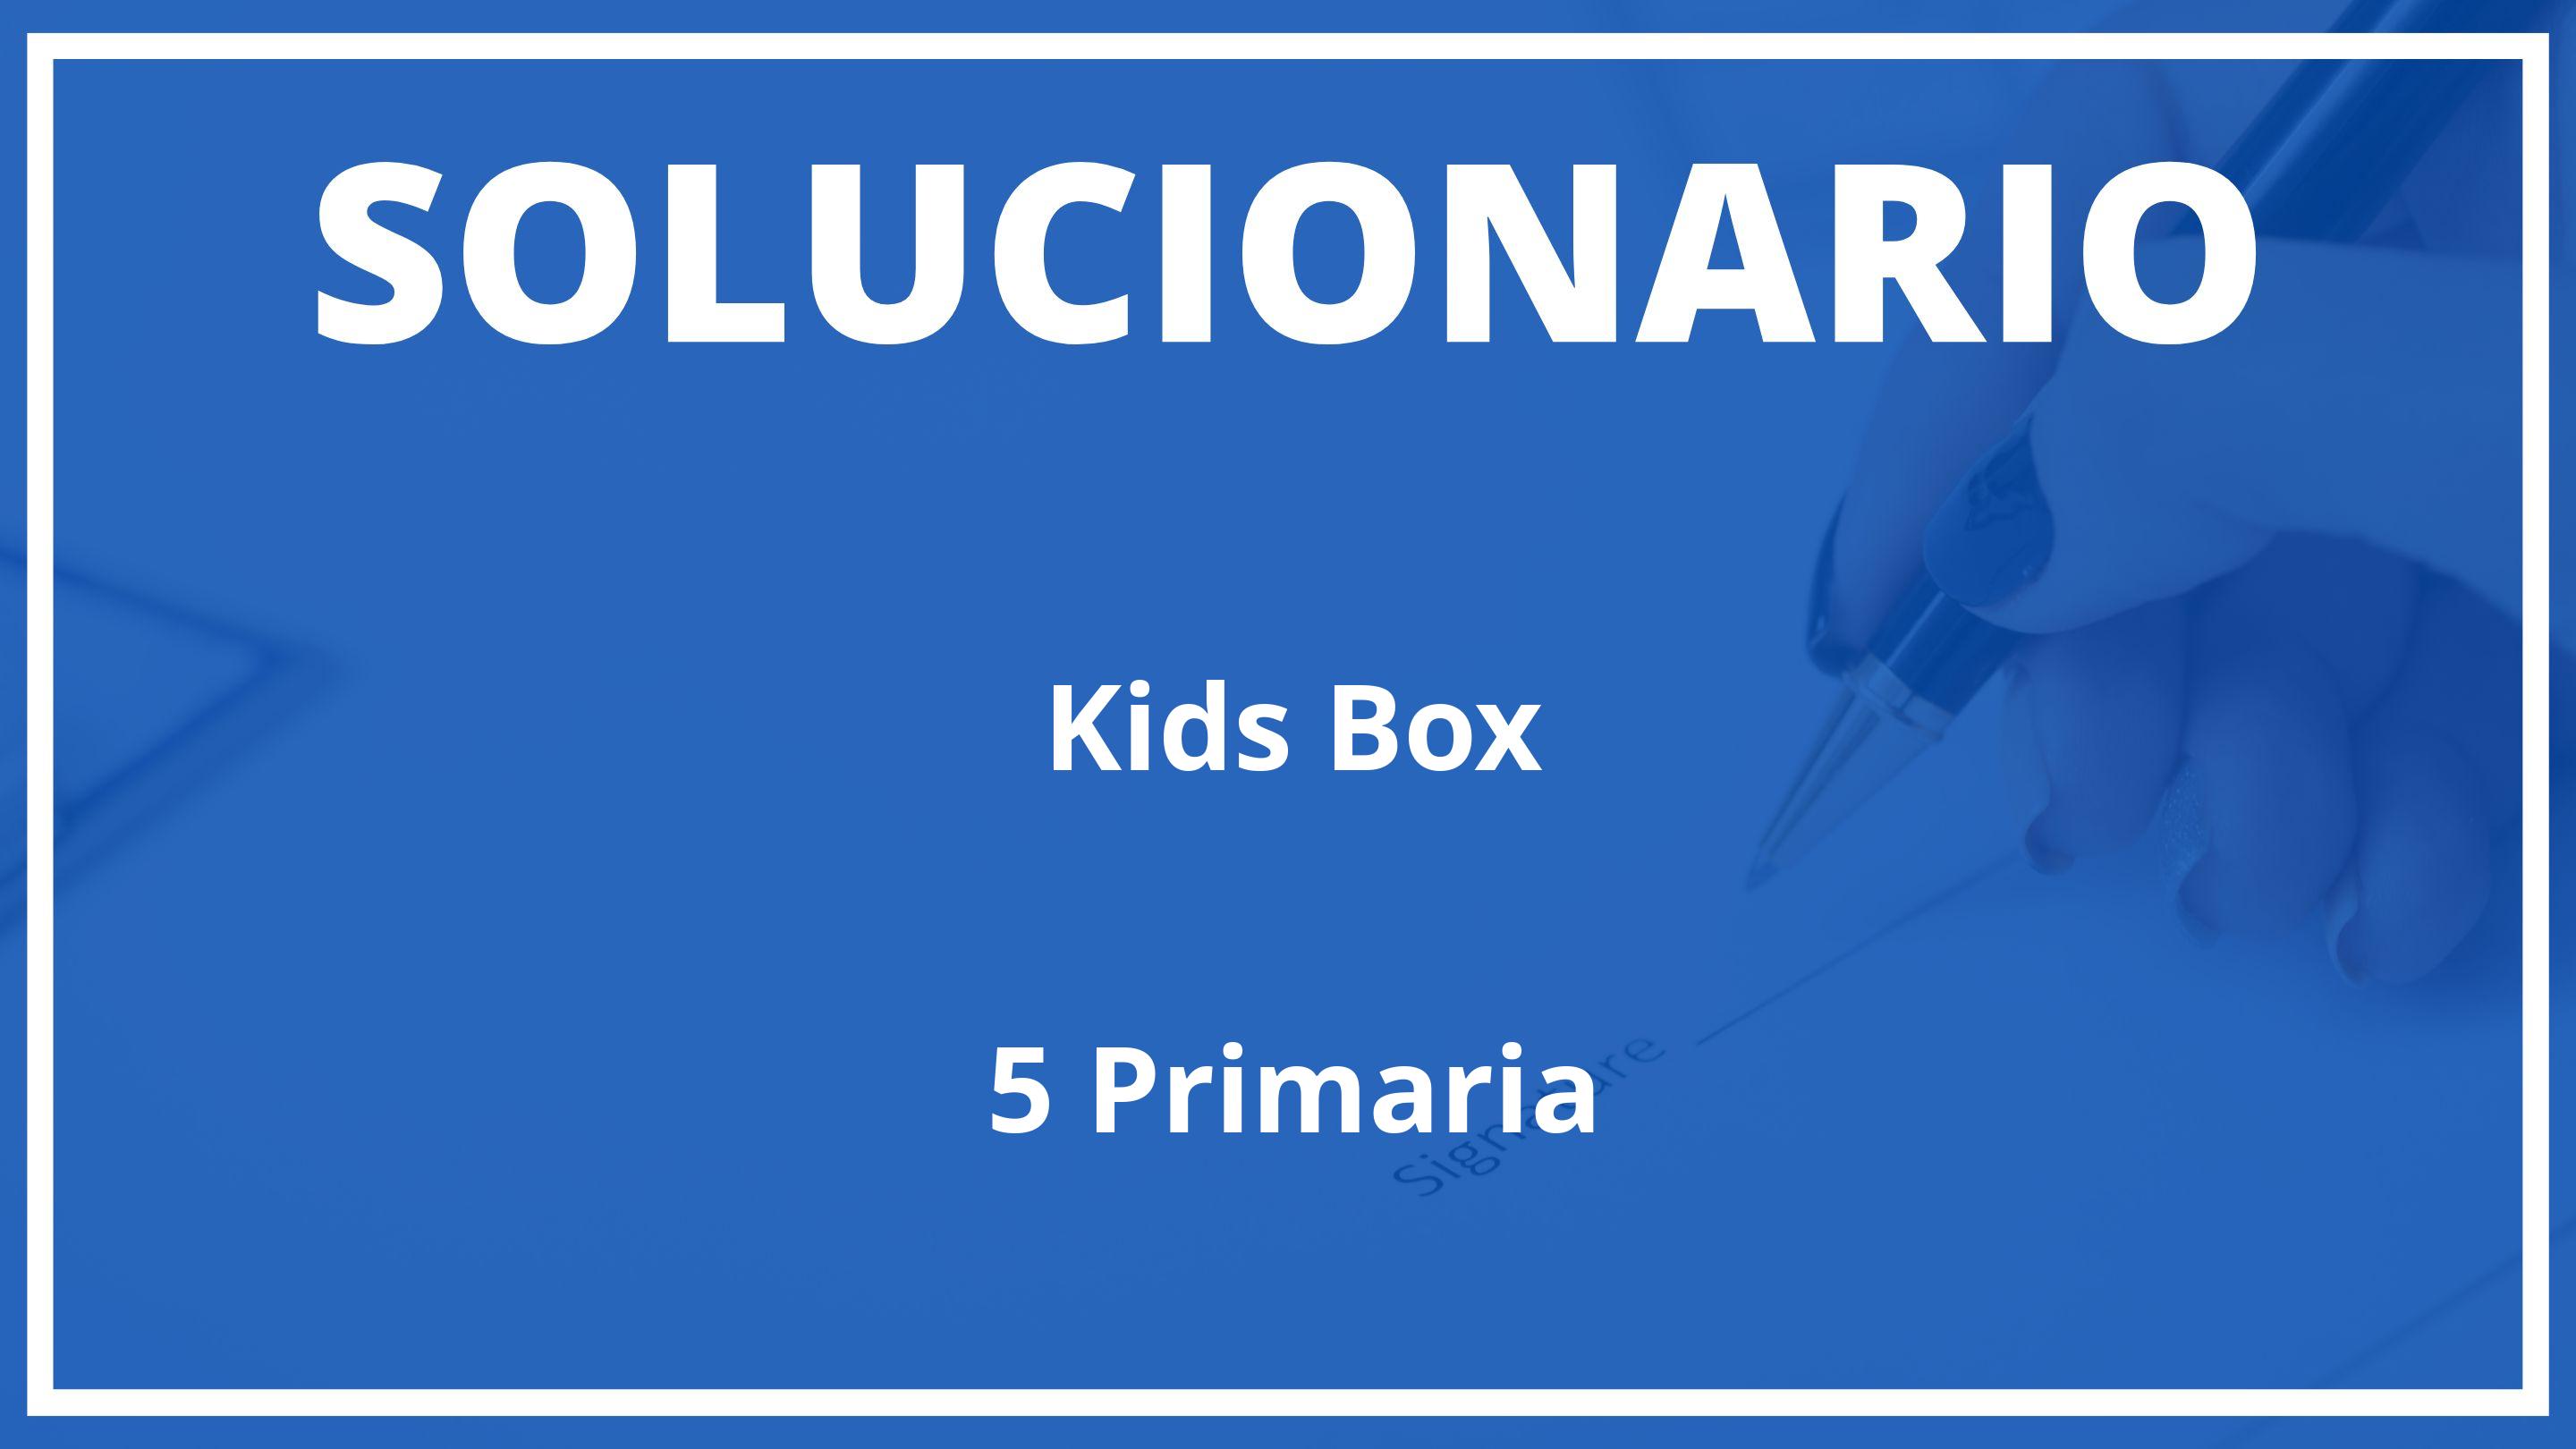 Solucionario Kids Box Cambridge 5 Primaria